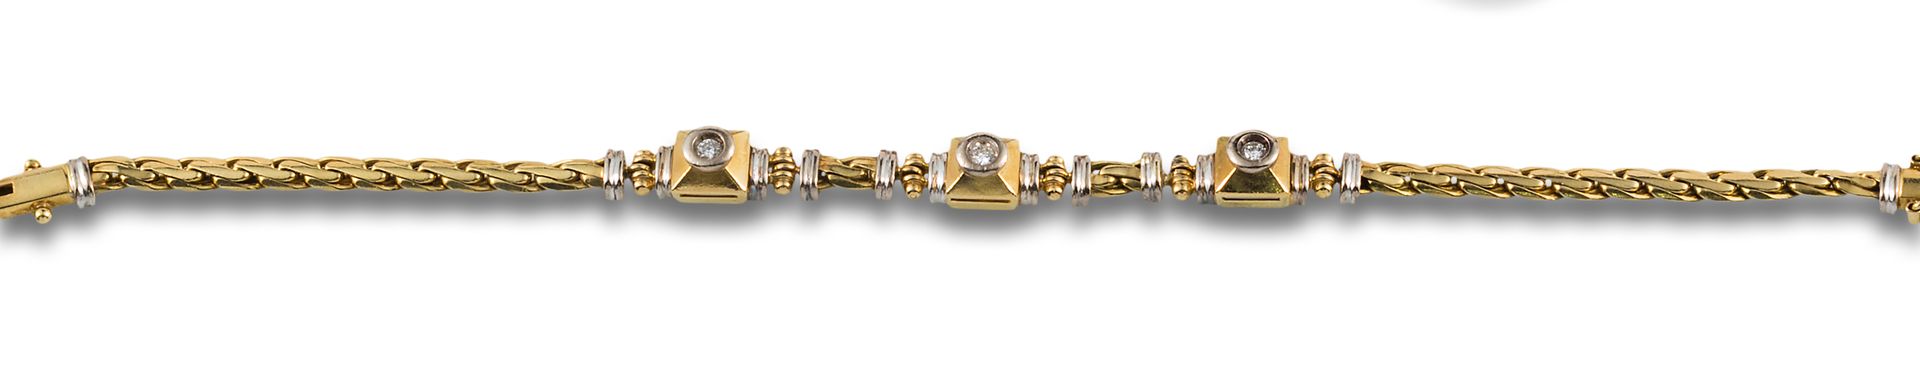 18 kt yellow and white gold braided bracelet. Formata da tre centri di diamanti,&hellip;